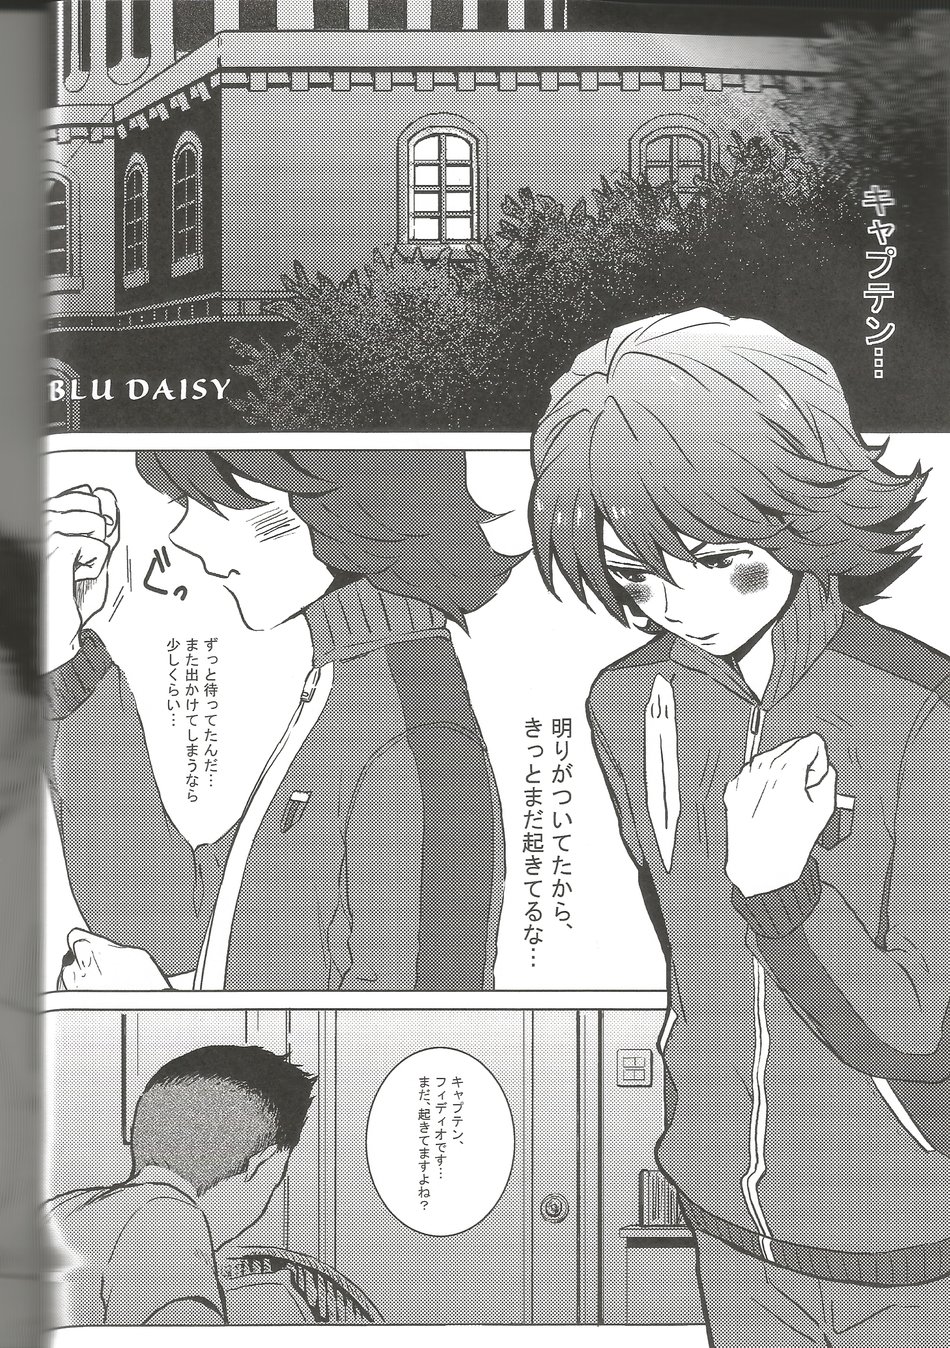 [MUGEN (Hachino)] BLU DAISY (Inazuma Eleven) - Page 3